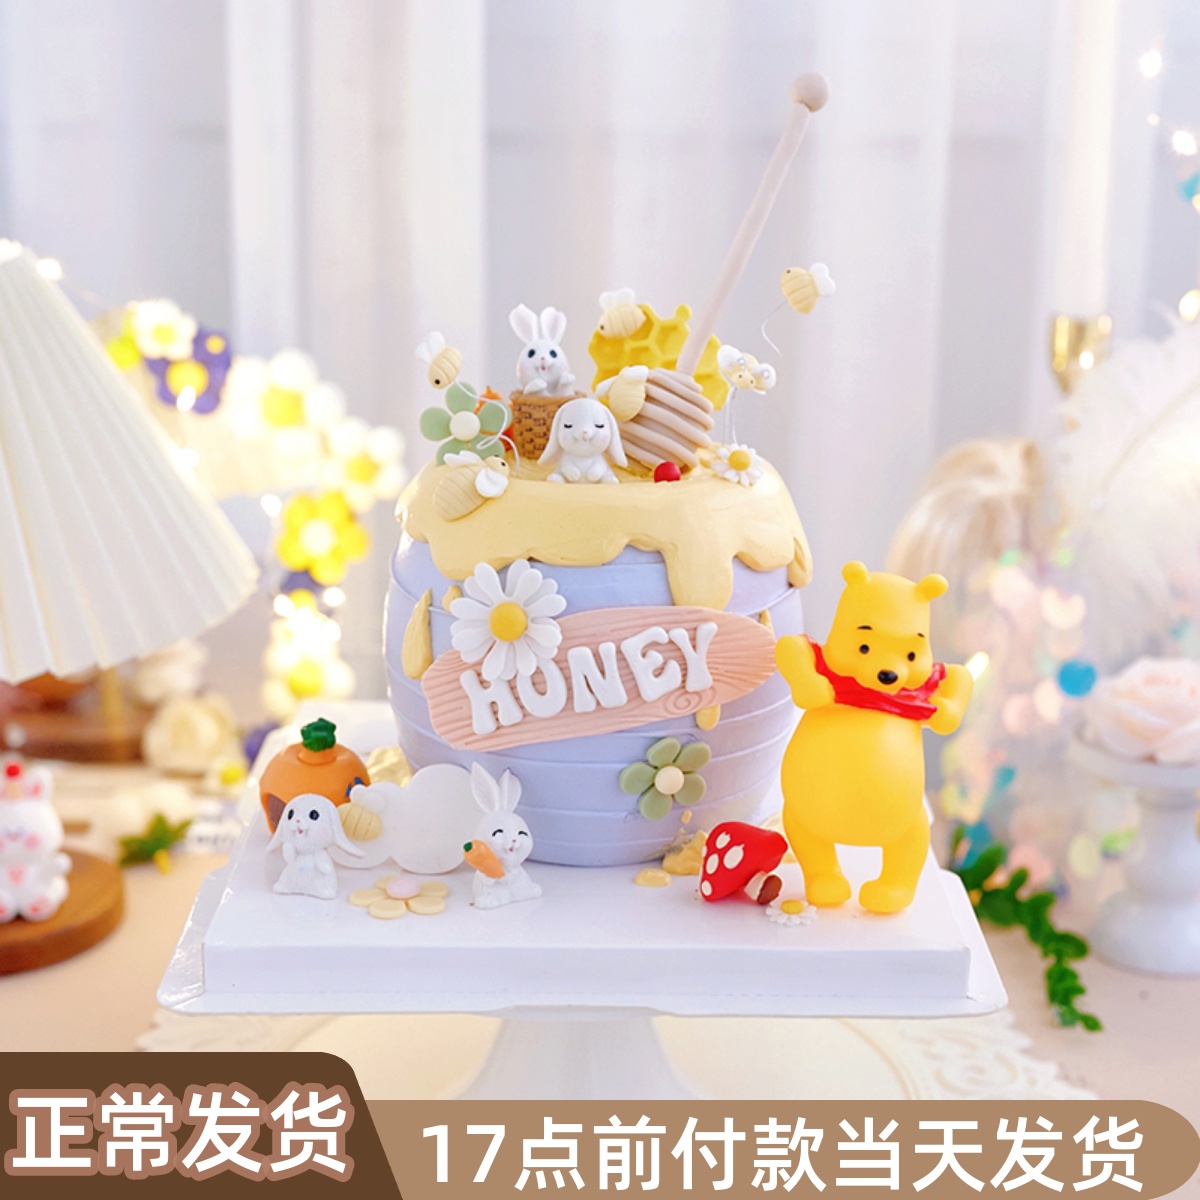 布朗熊可尼兔蛋糕摆件 - 产品展示 - 青岛锦喜食品原料有限公司